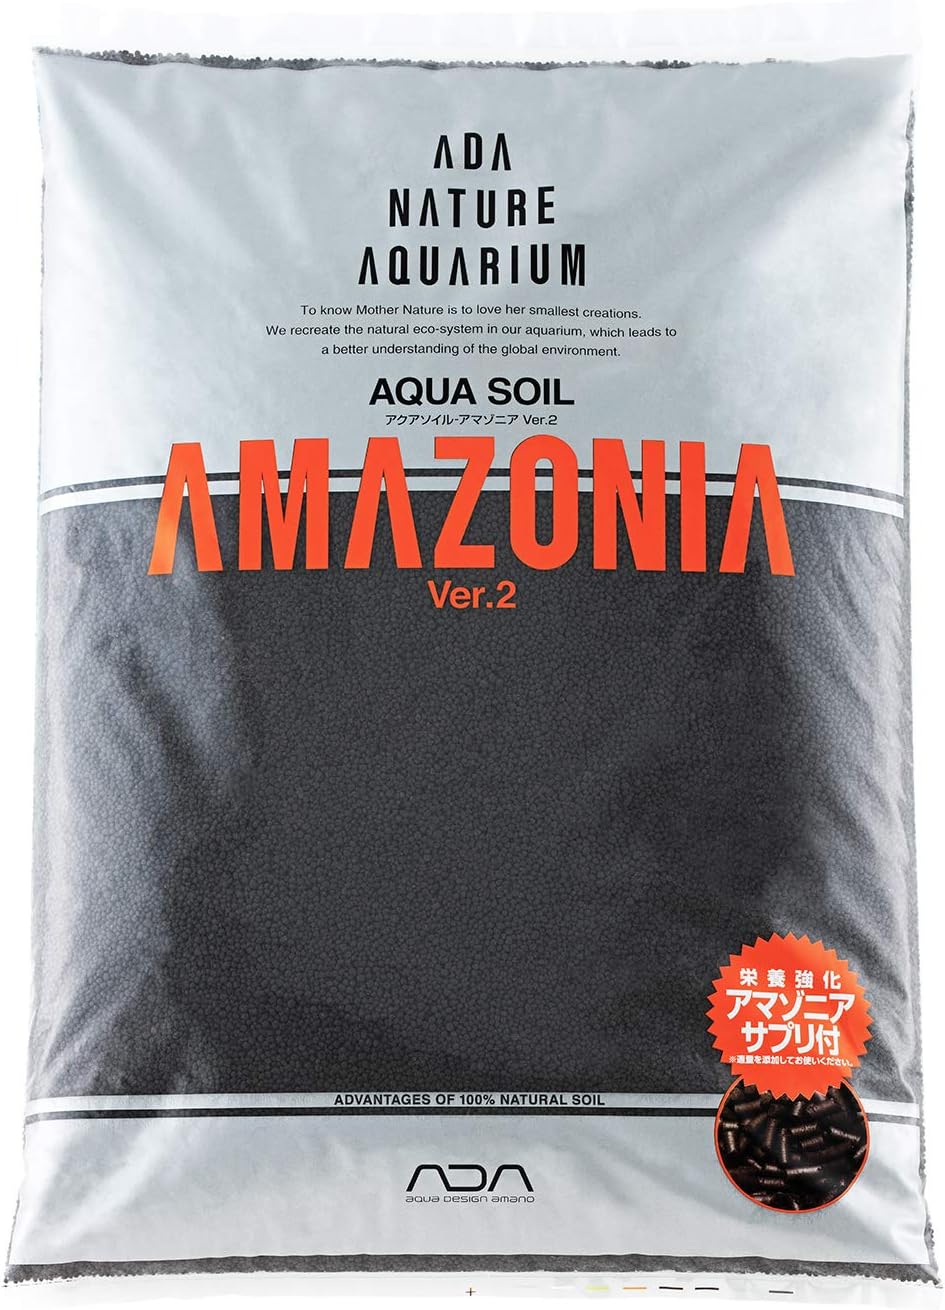 ADA Aqua soil amazonia Ver 2